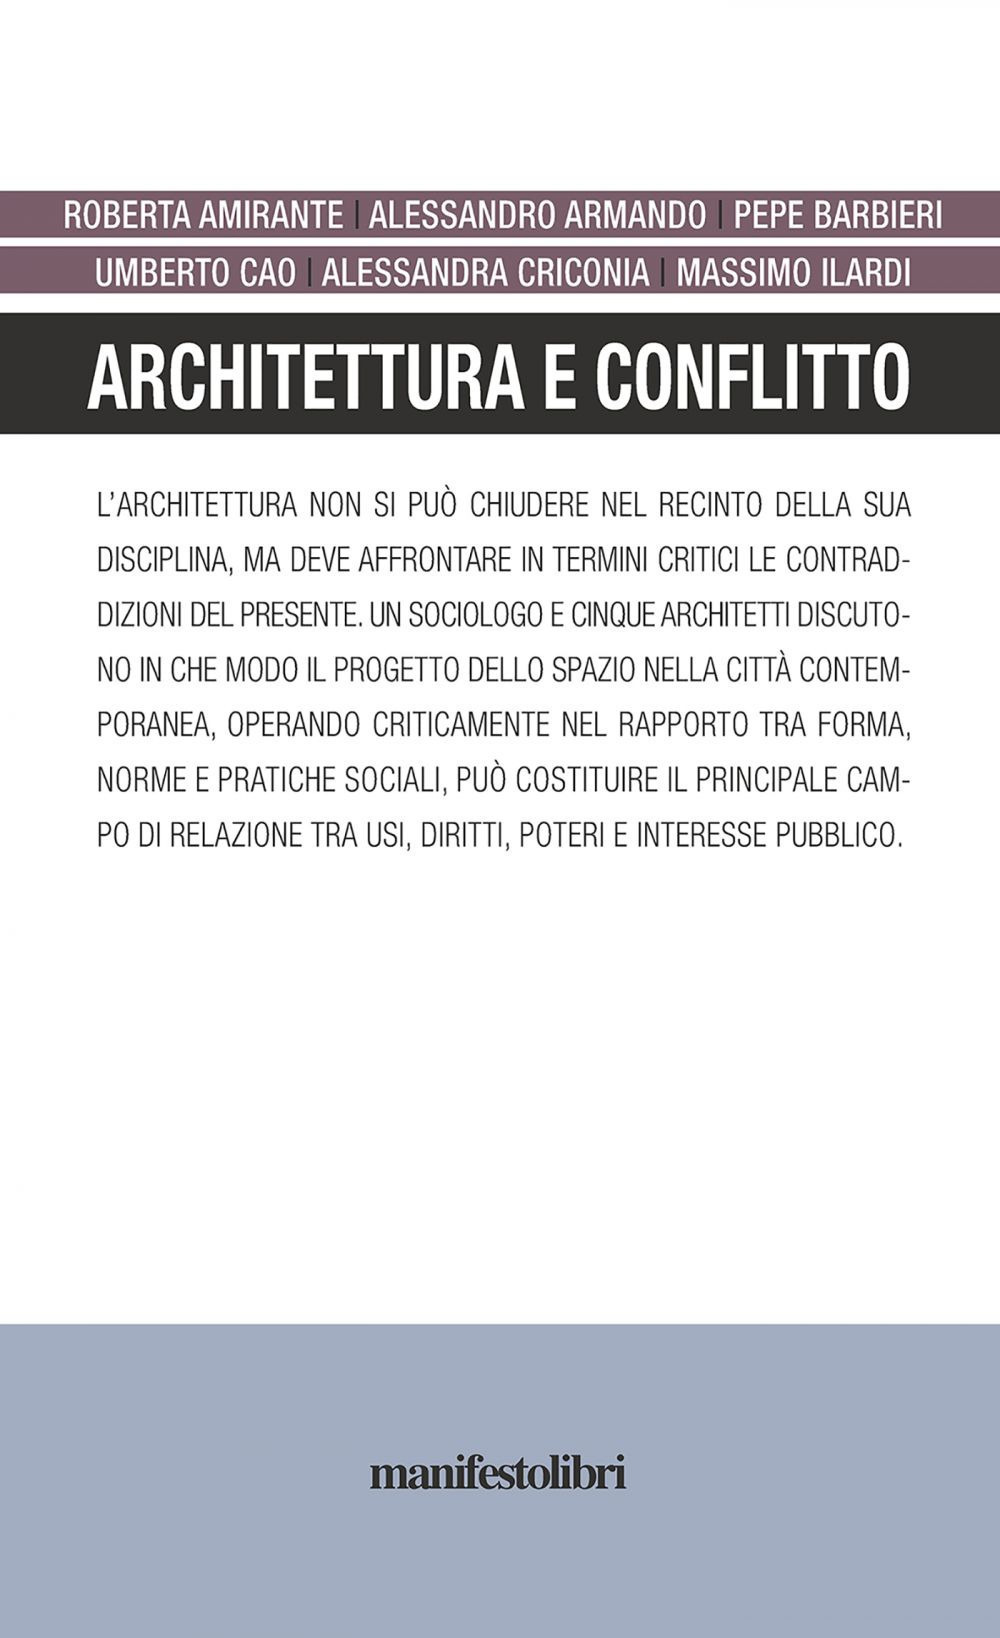 Image of Architettura e conflitto